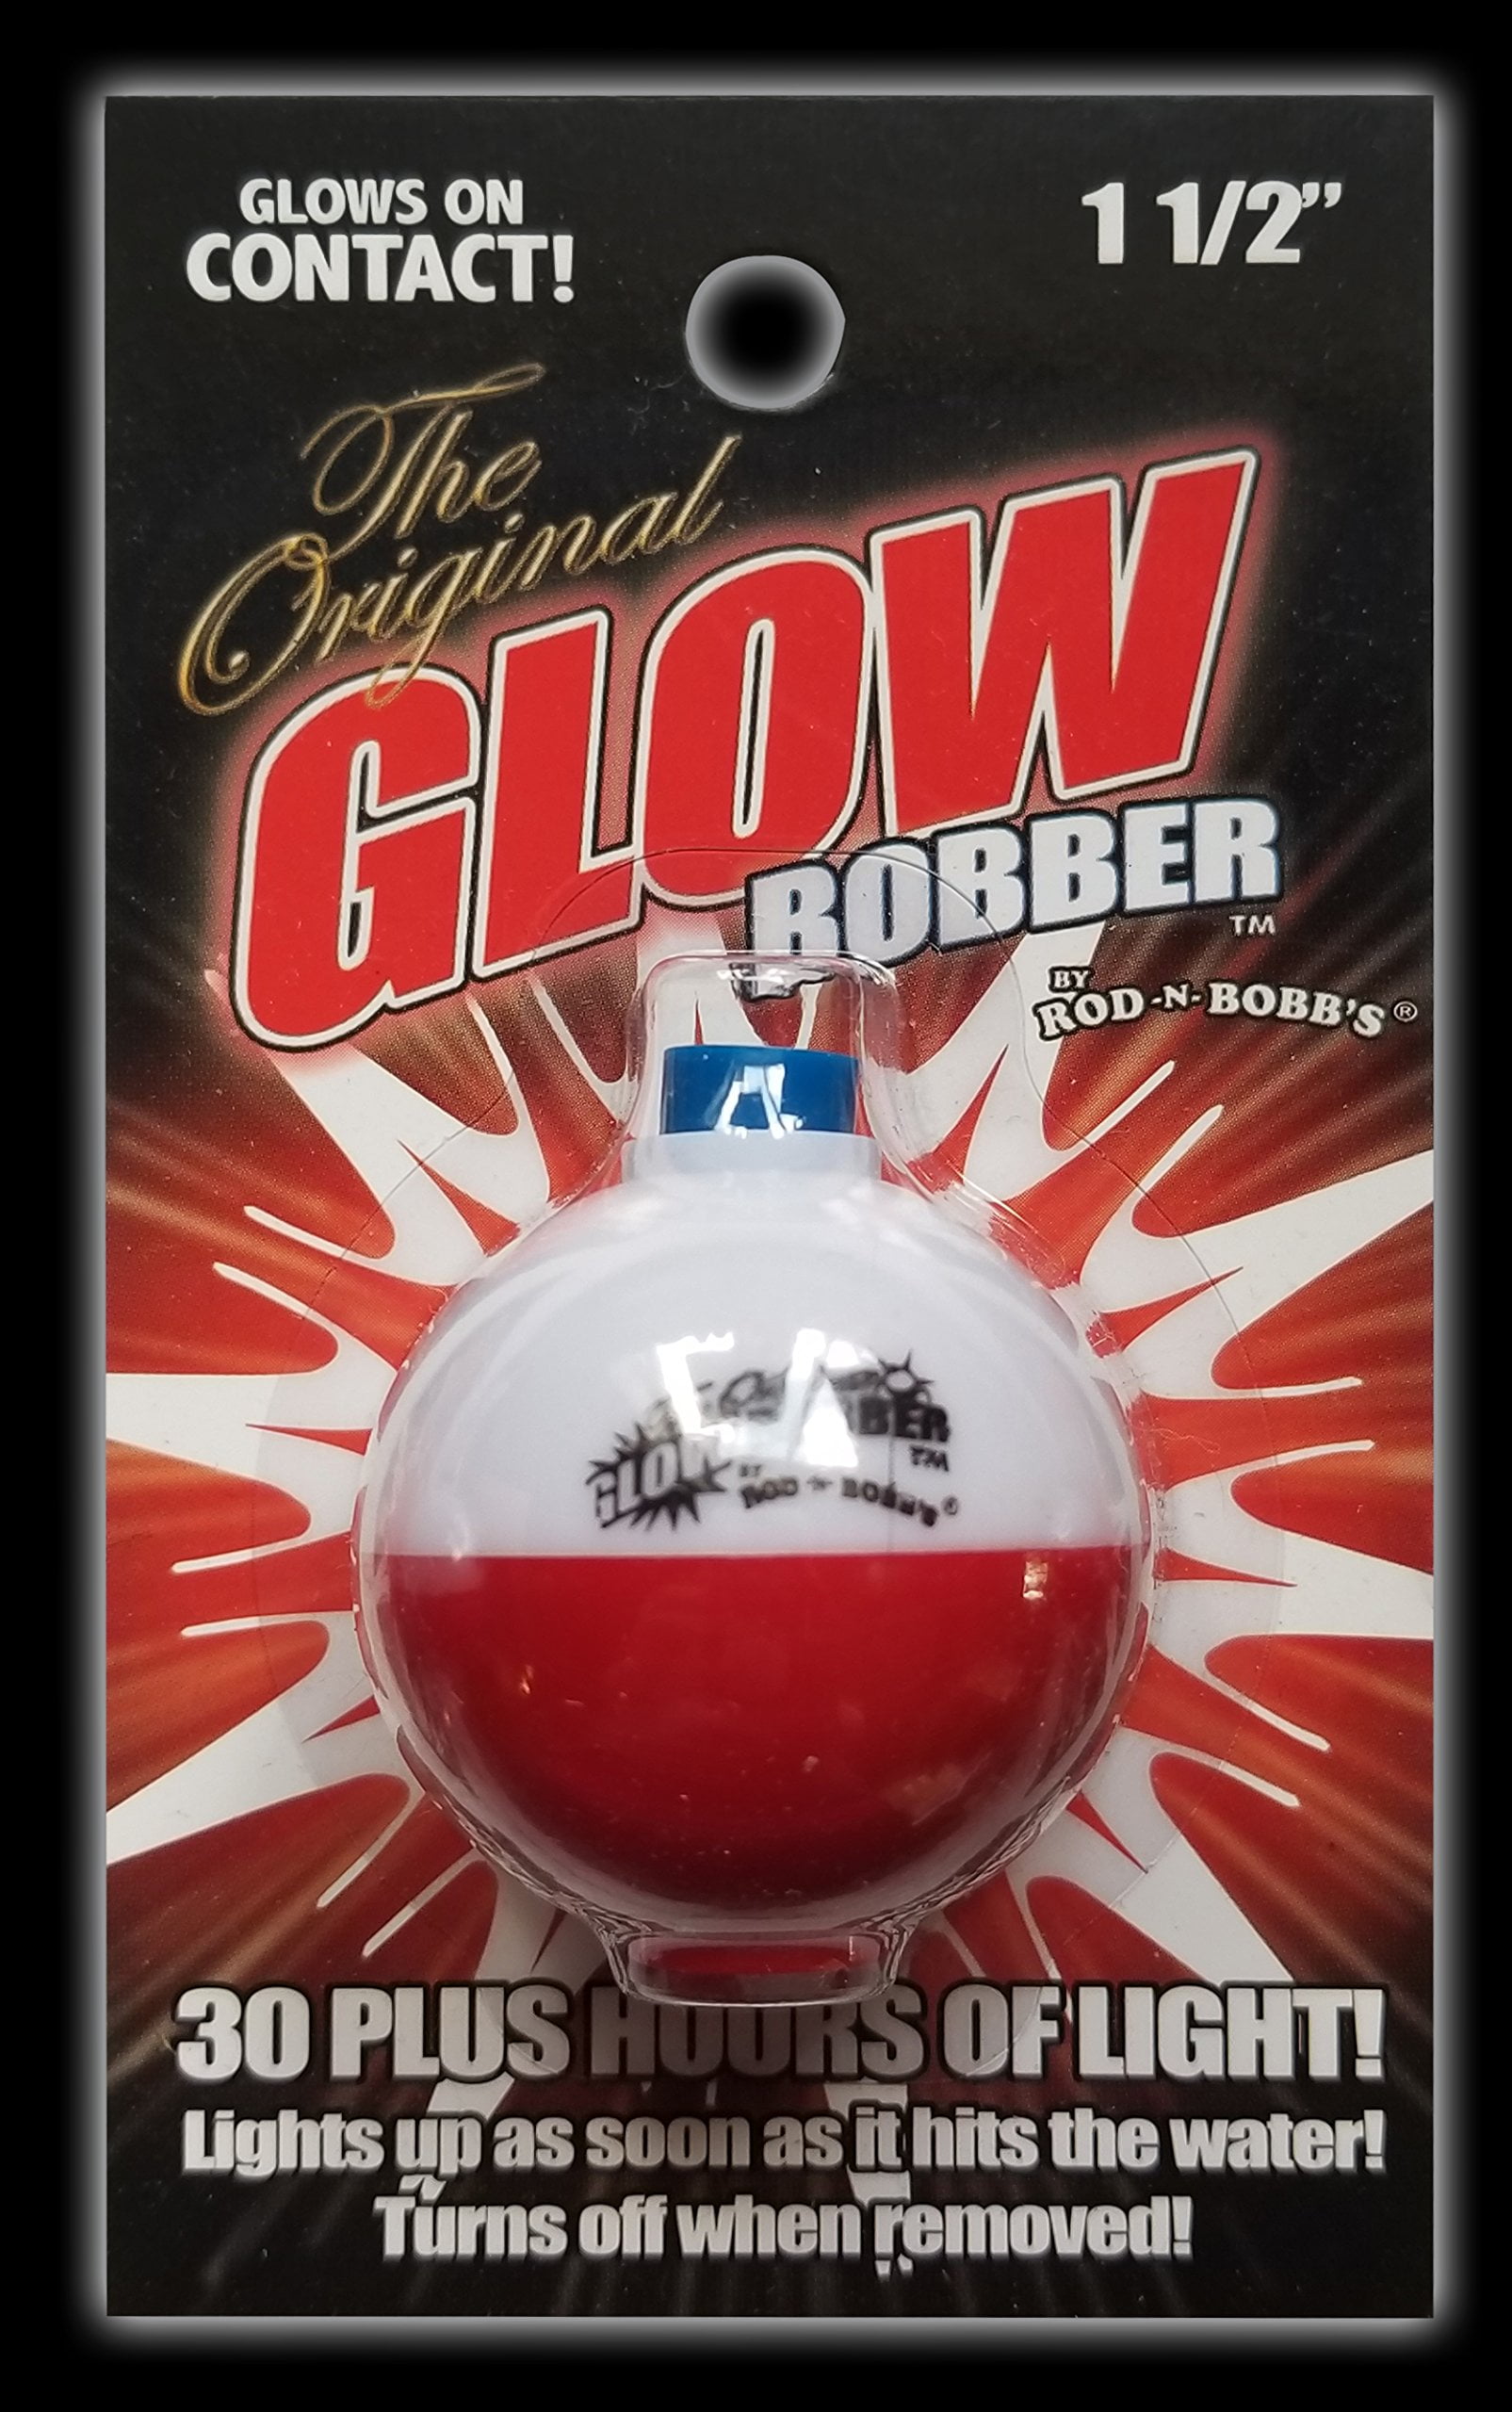 Rod-N-Bobb Original Glow Bobber Multi-Colored 2 